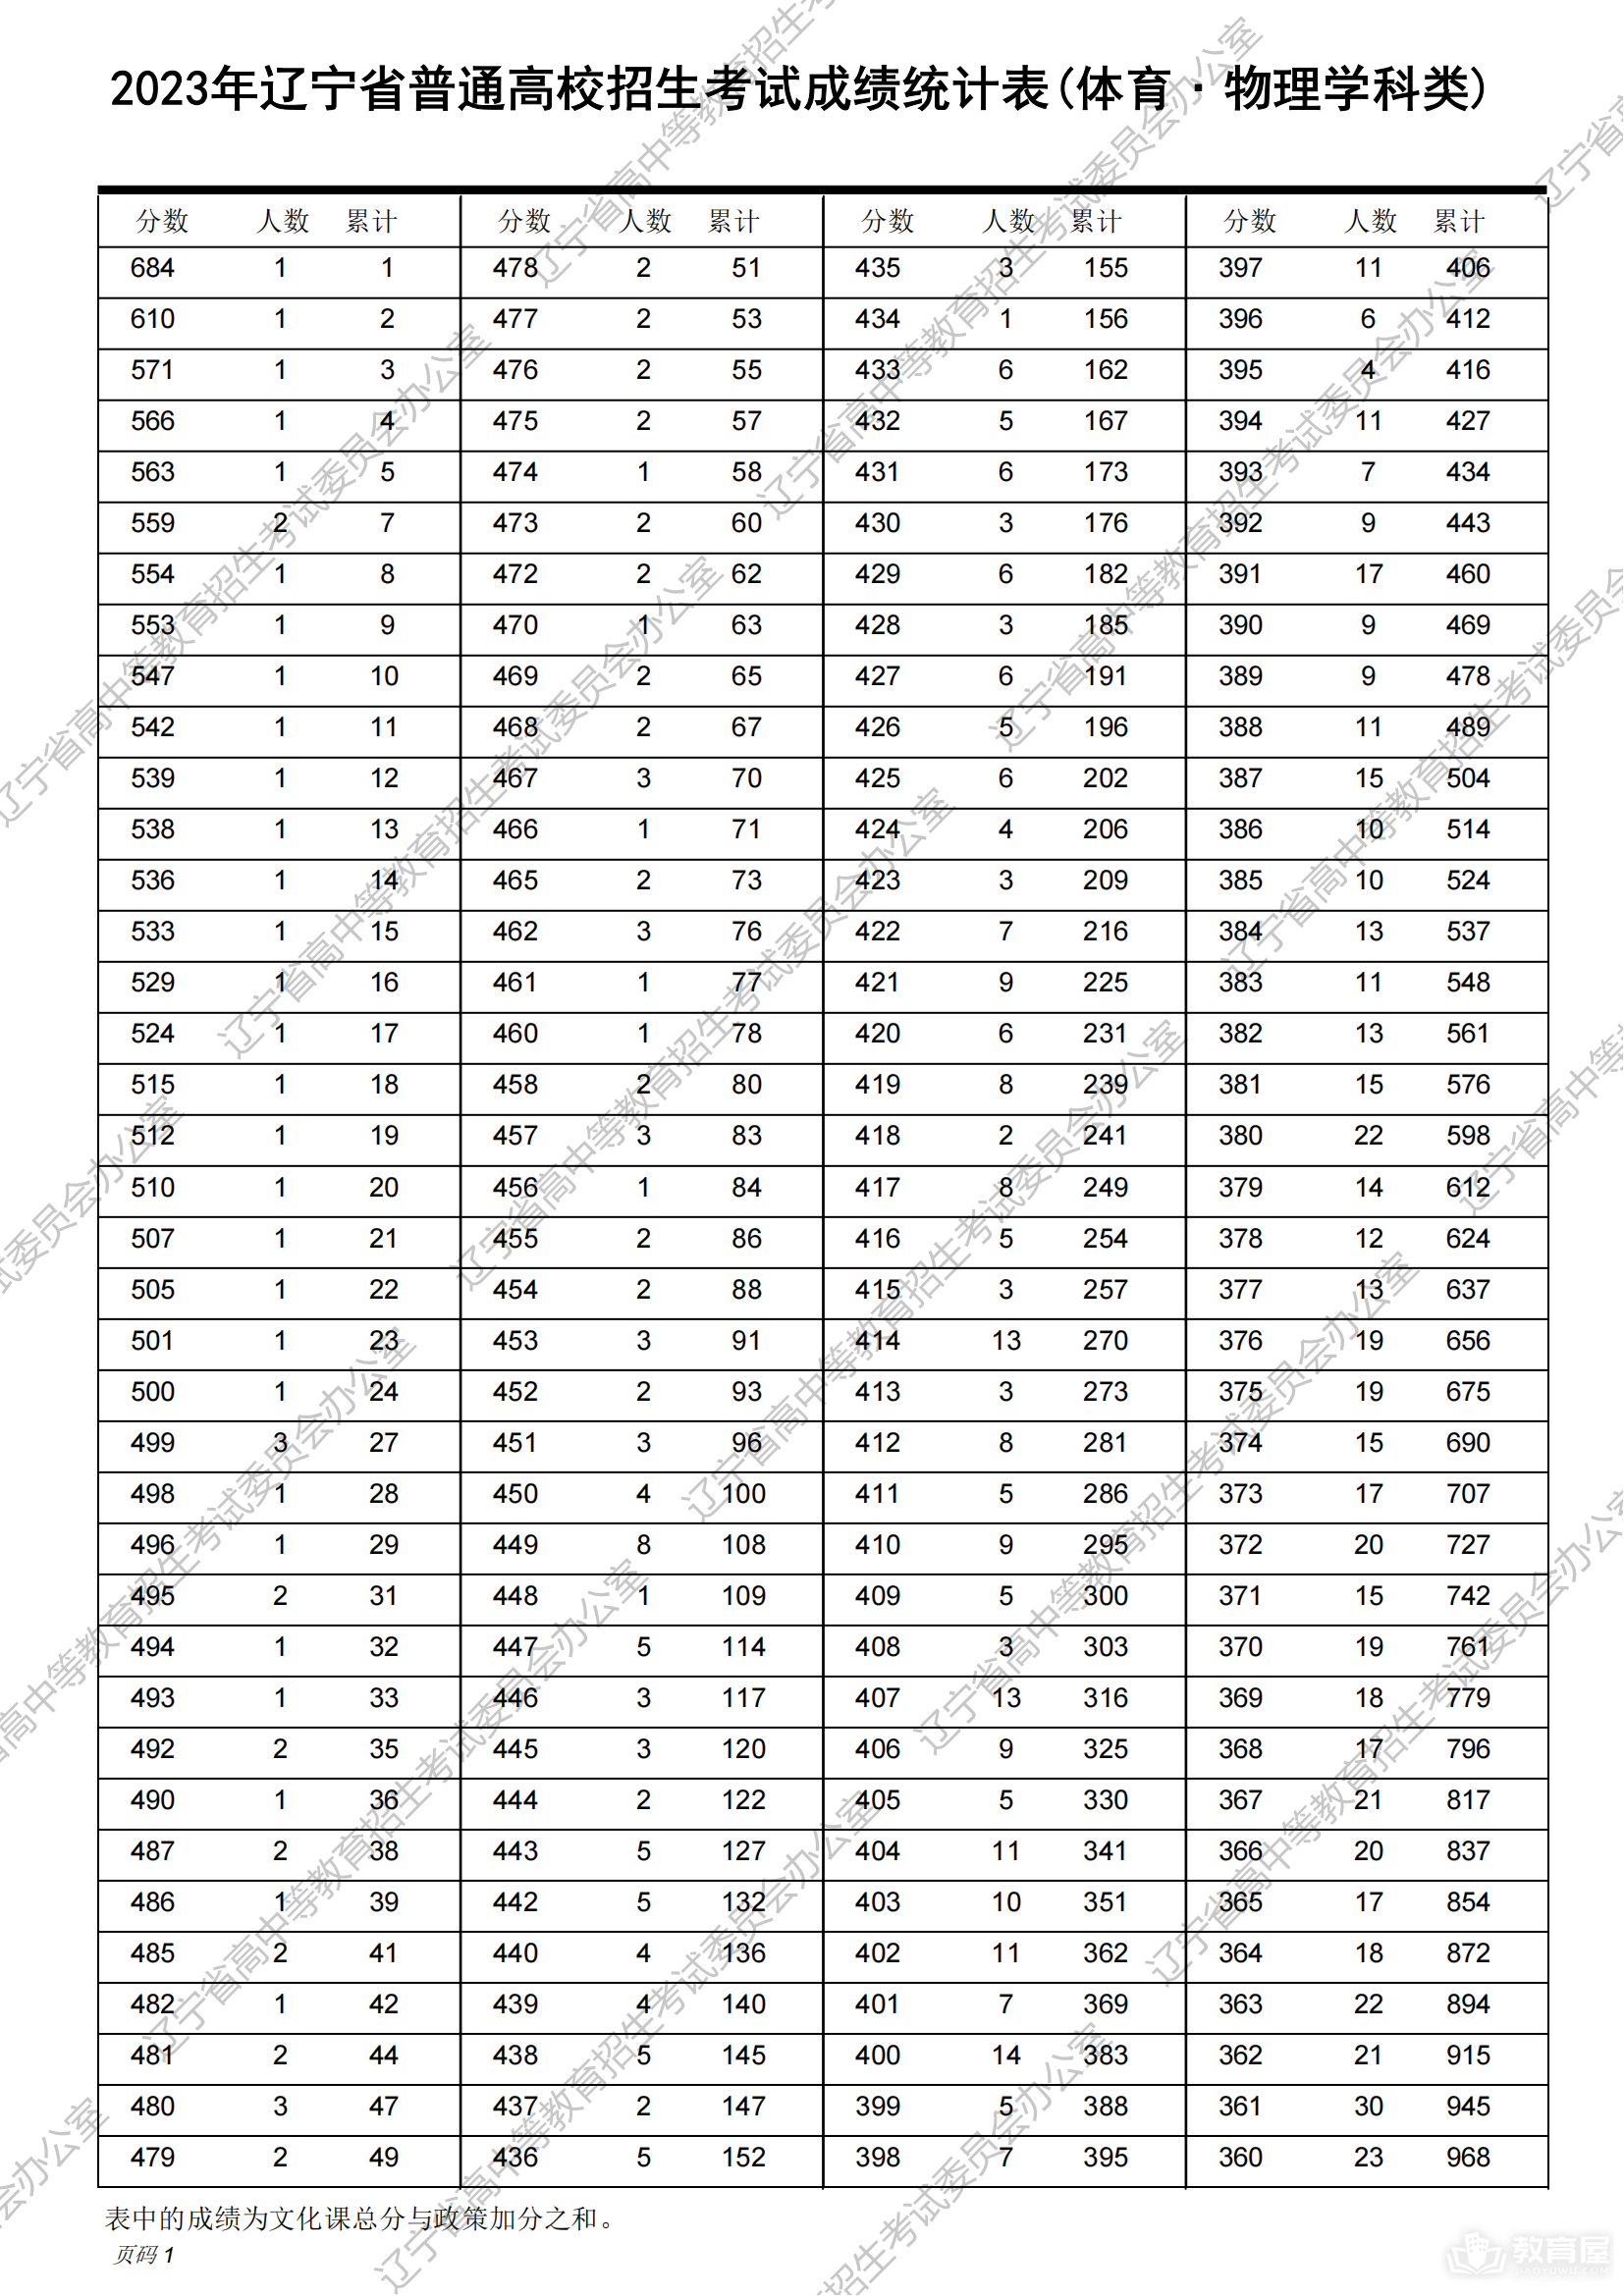 辽宁省普通高校招生考试成绩统计表（2023）